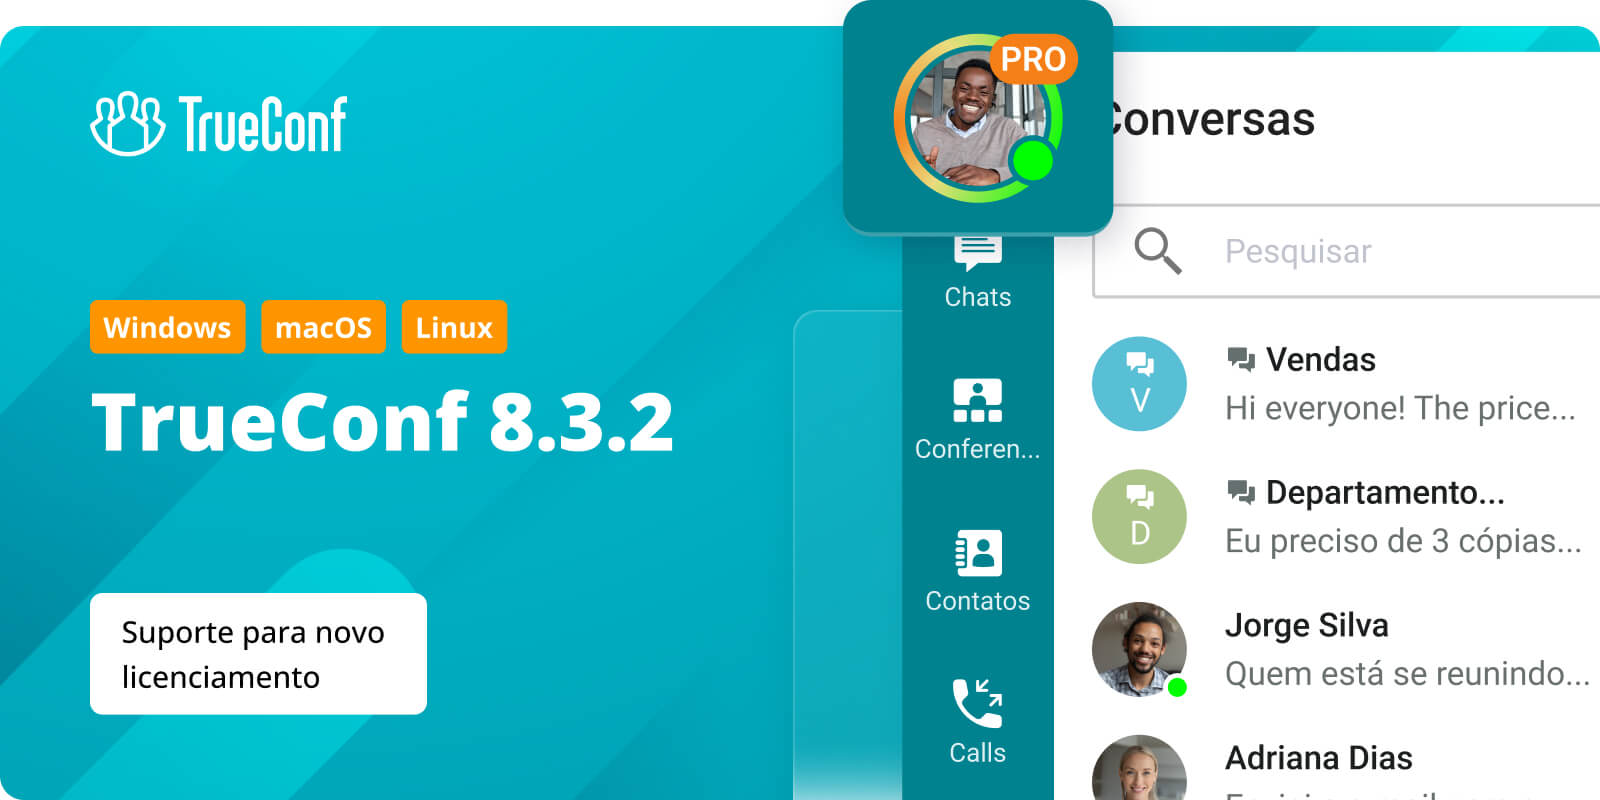 TrueConf 8.3.2 para Windows, macOS e Linux: suporte para novo licenciamento 1